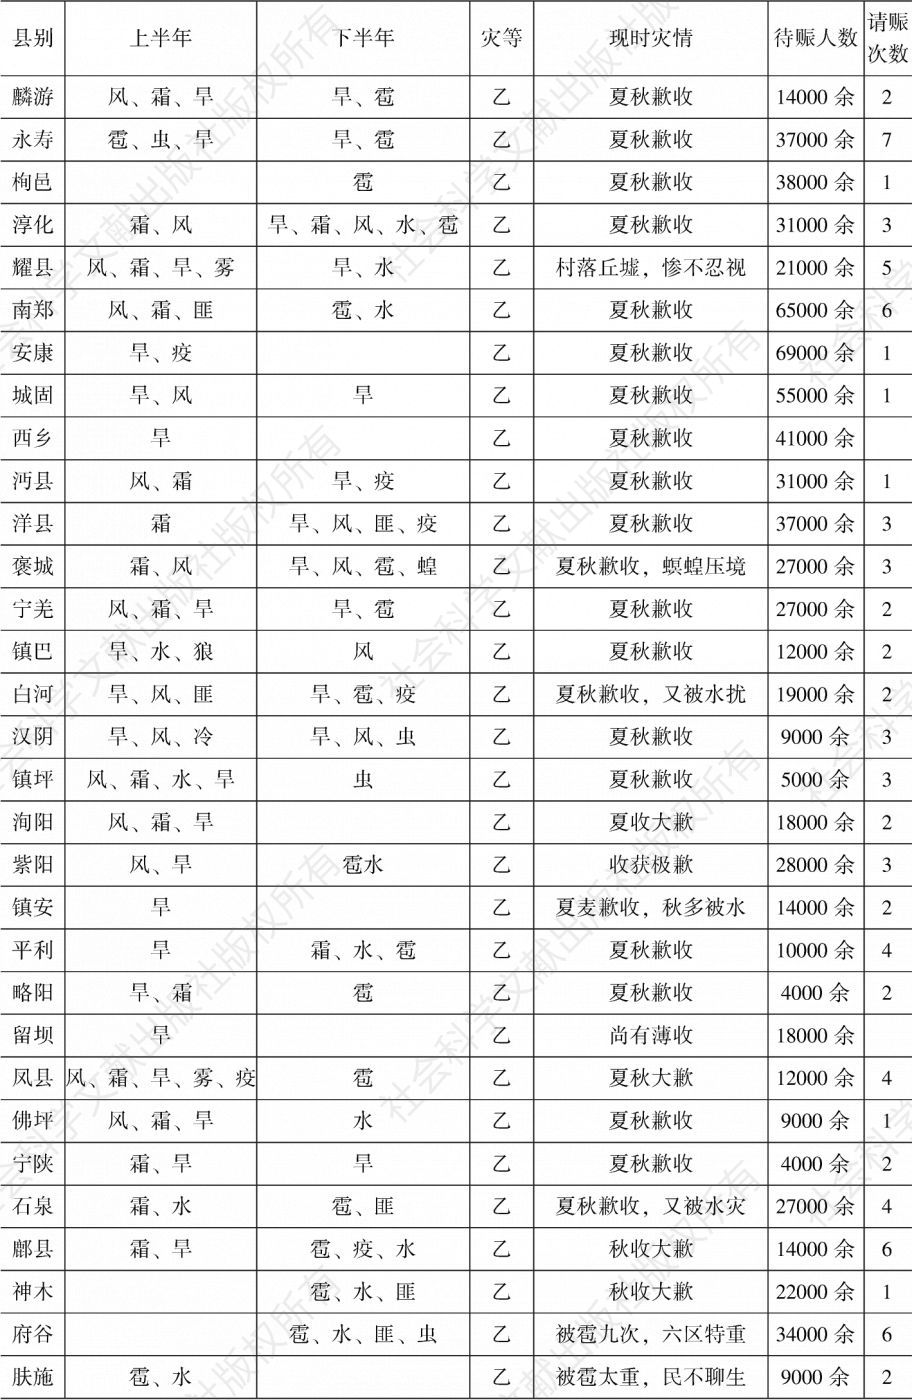 表2-19 陕西省各县1932年灾情-续表2